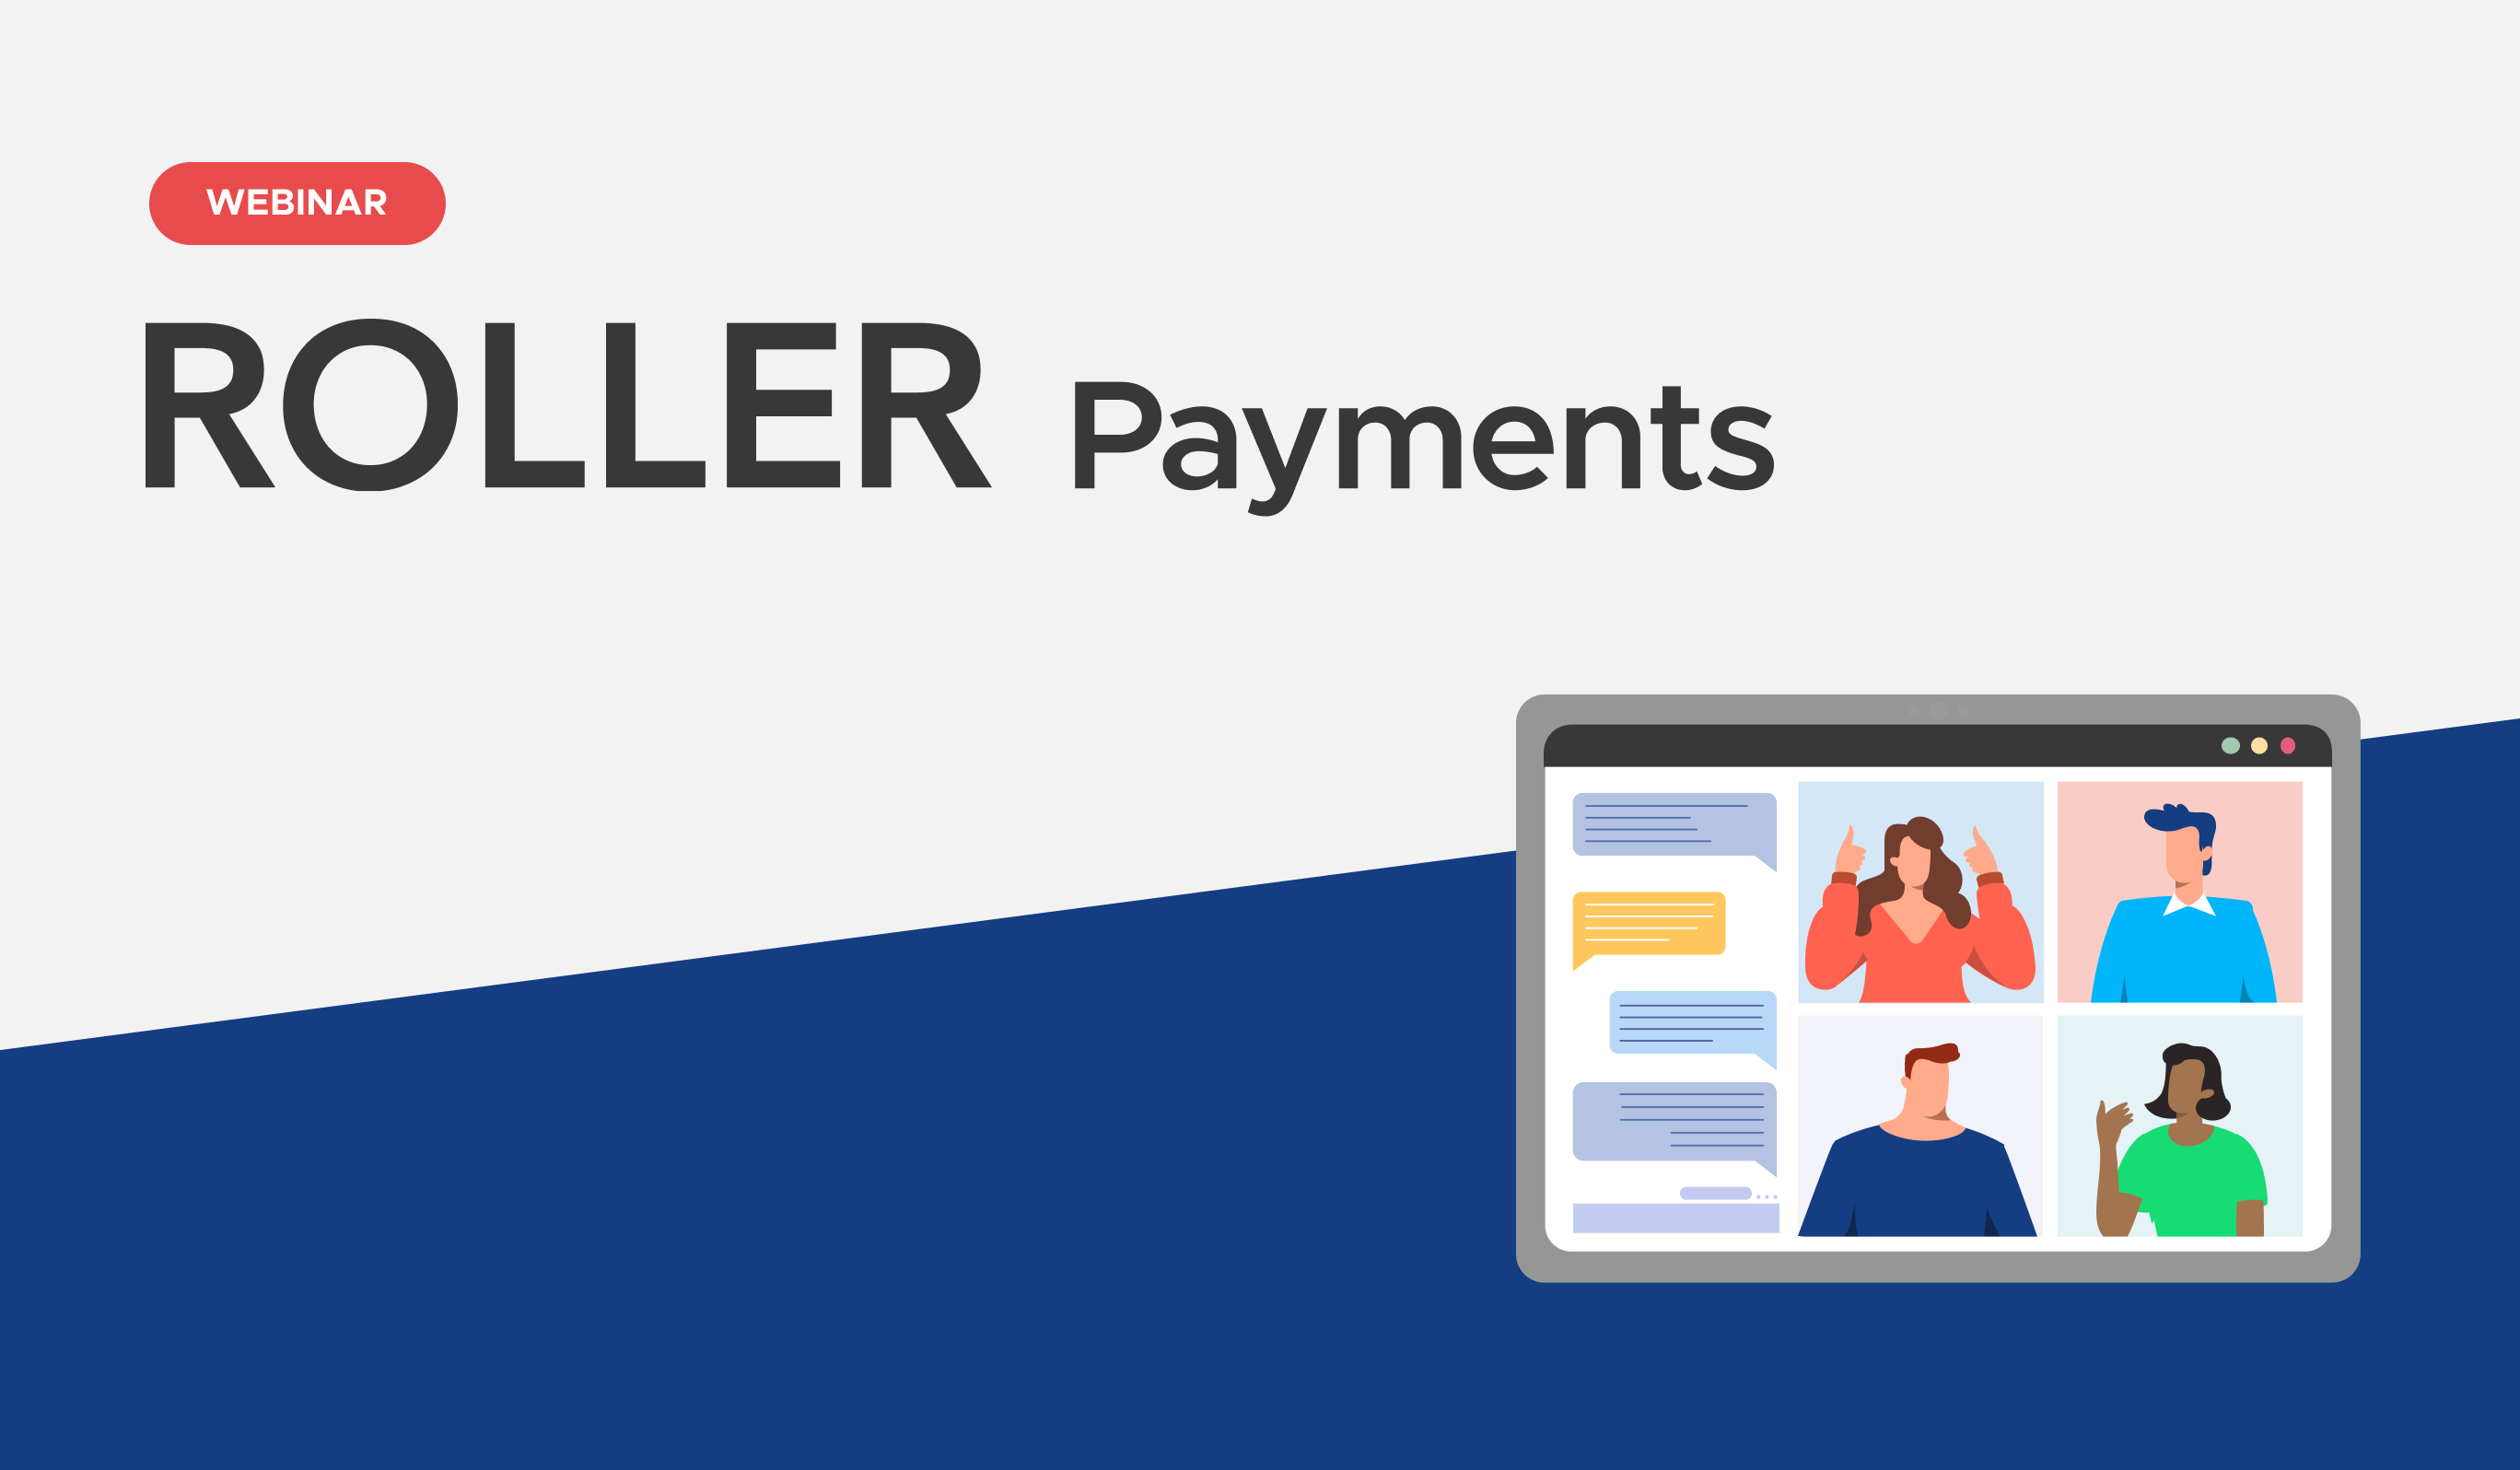 ROLLER Payments Webinar